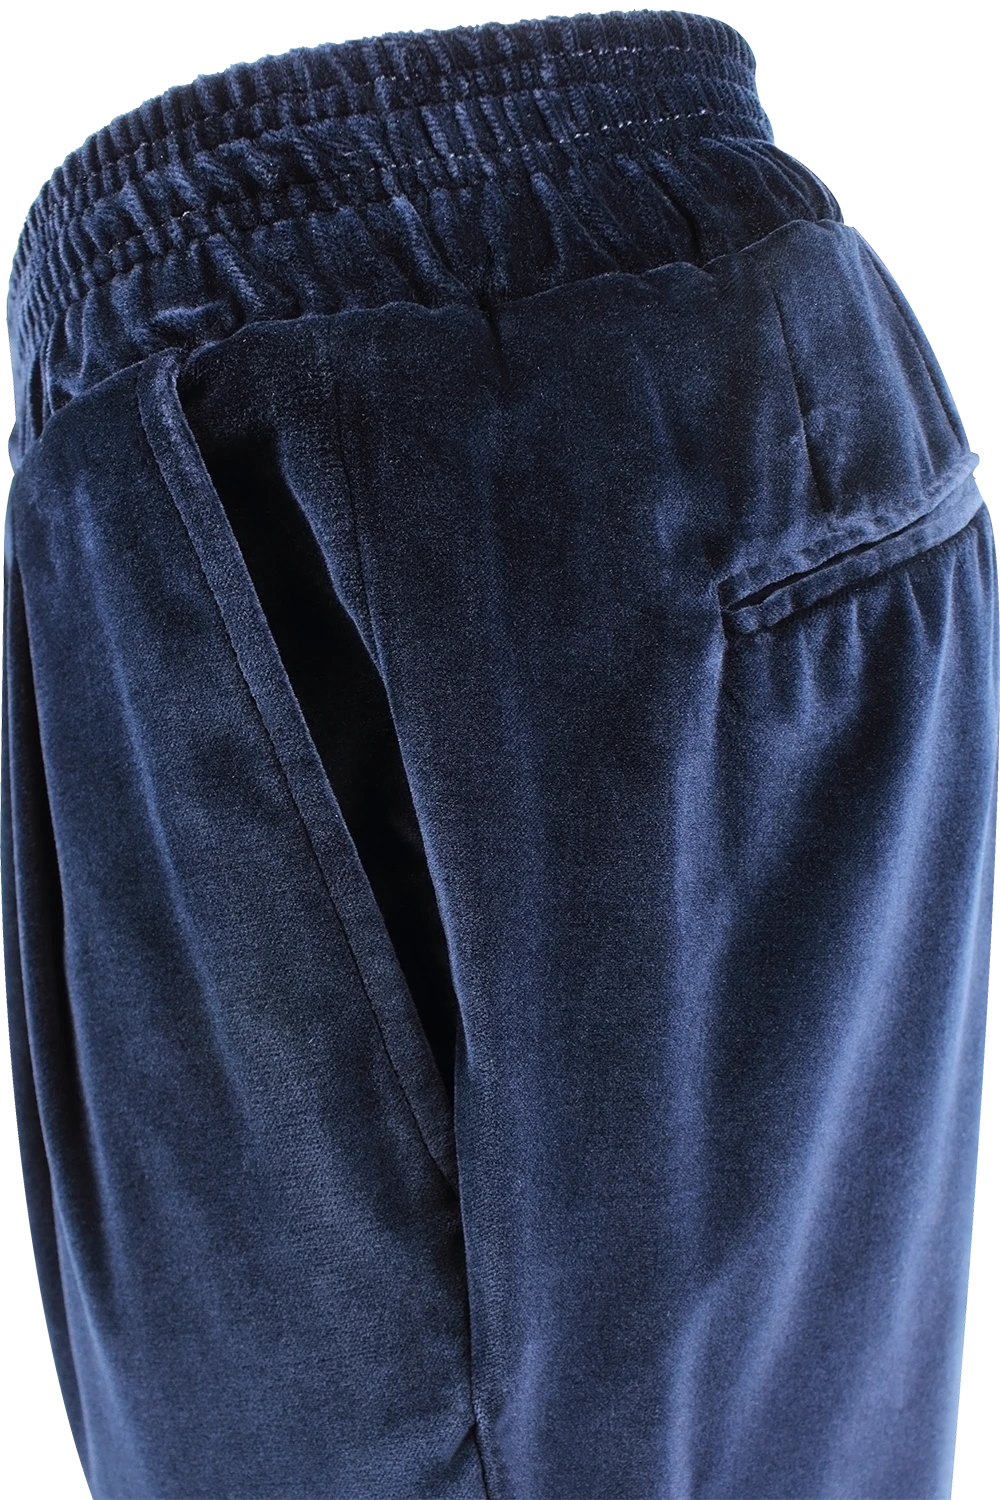 Pantalone con elastico in vita in velluto liscio blu lato